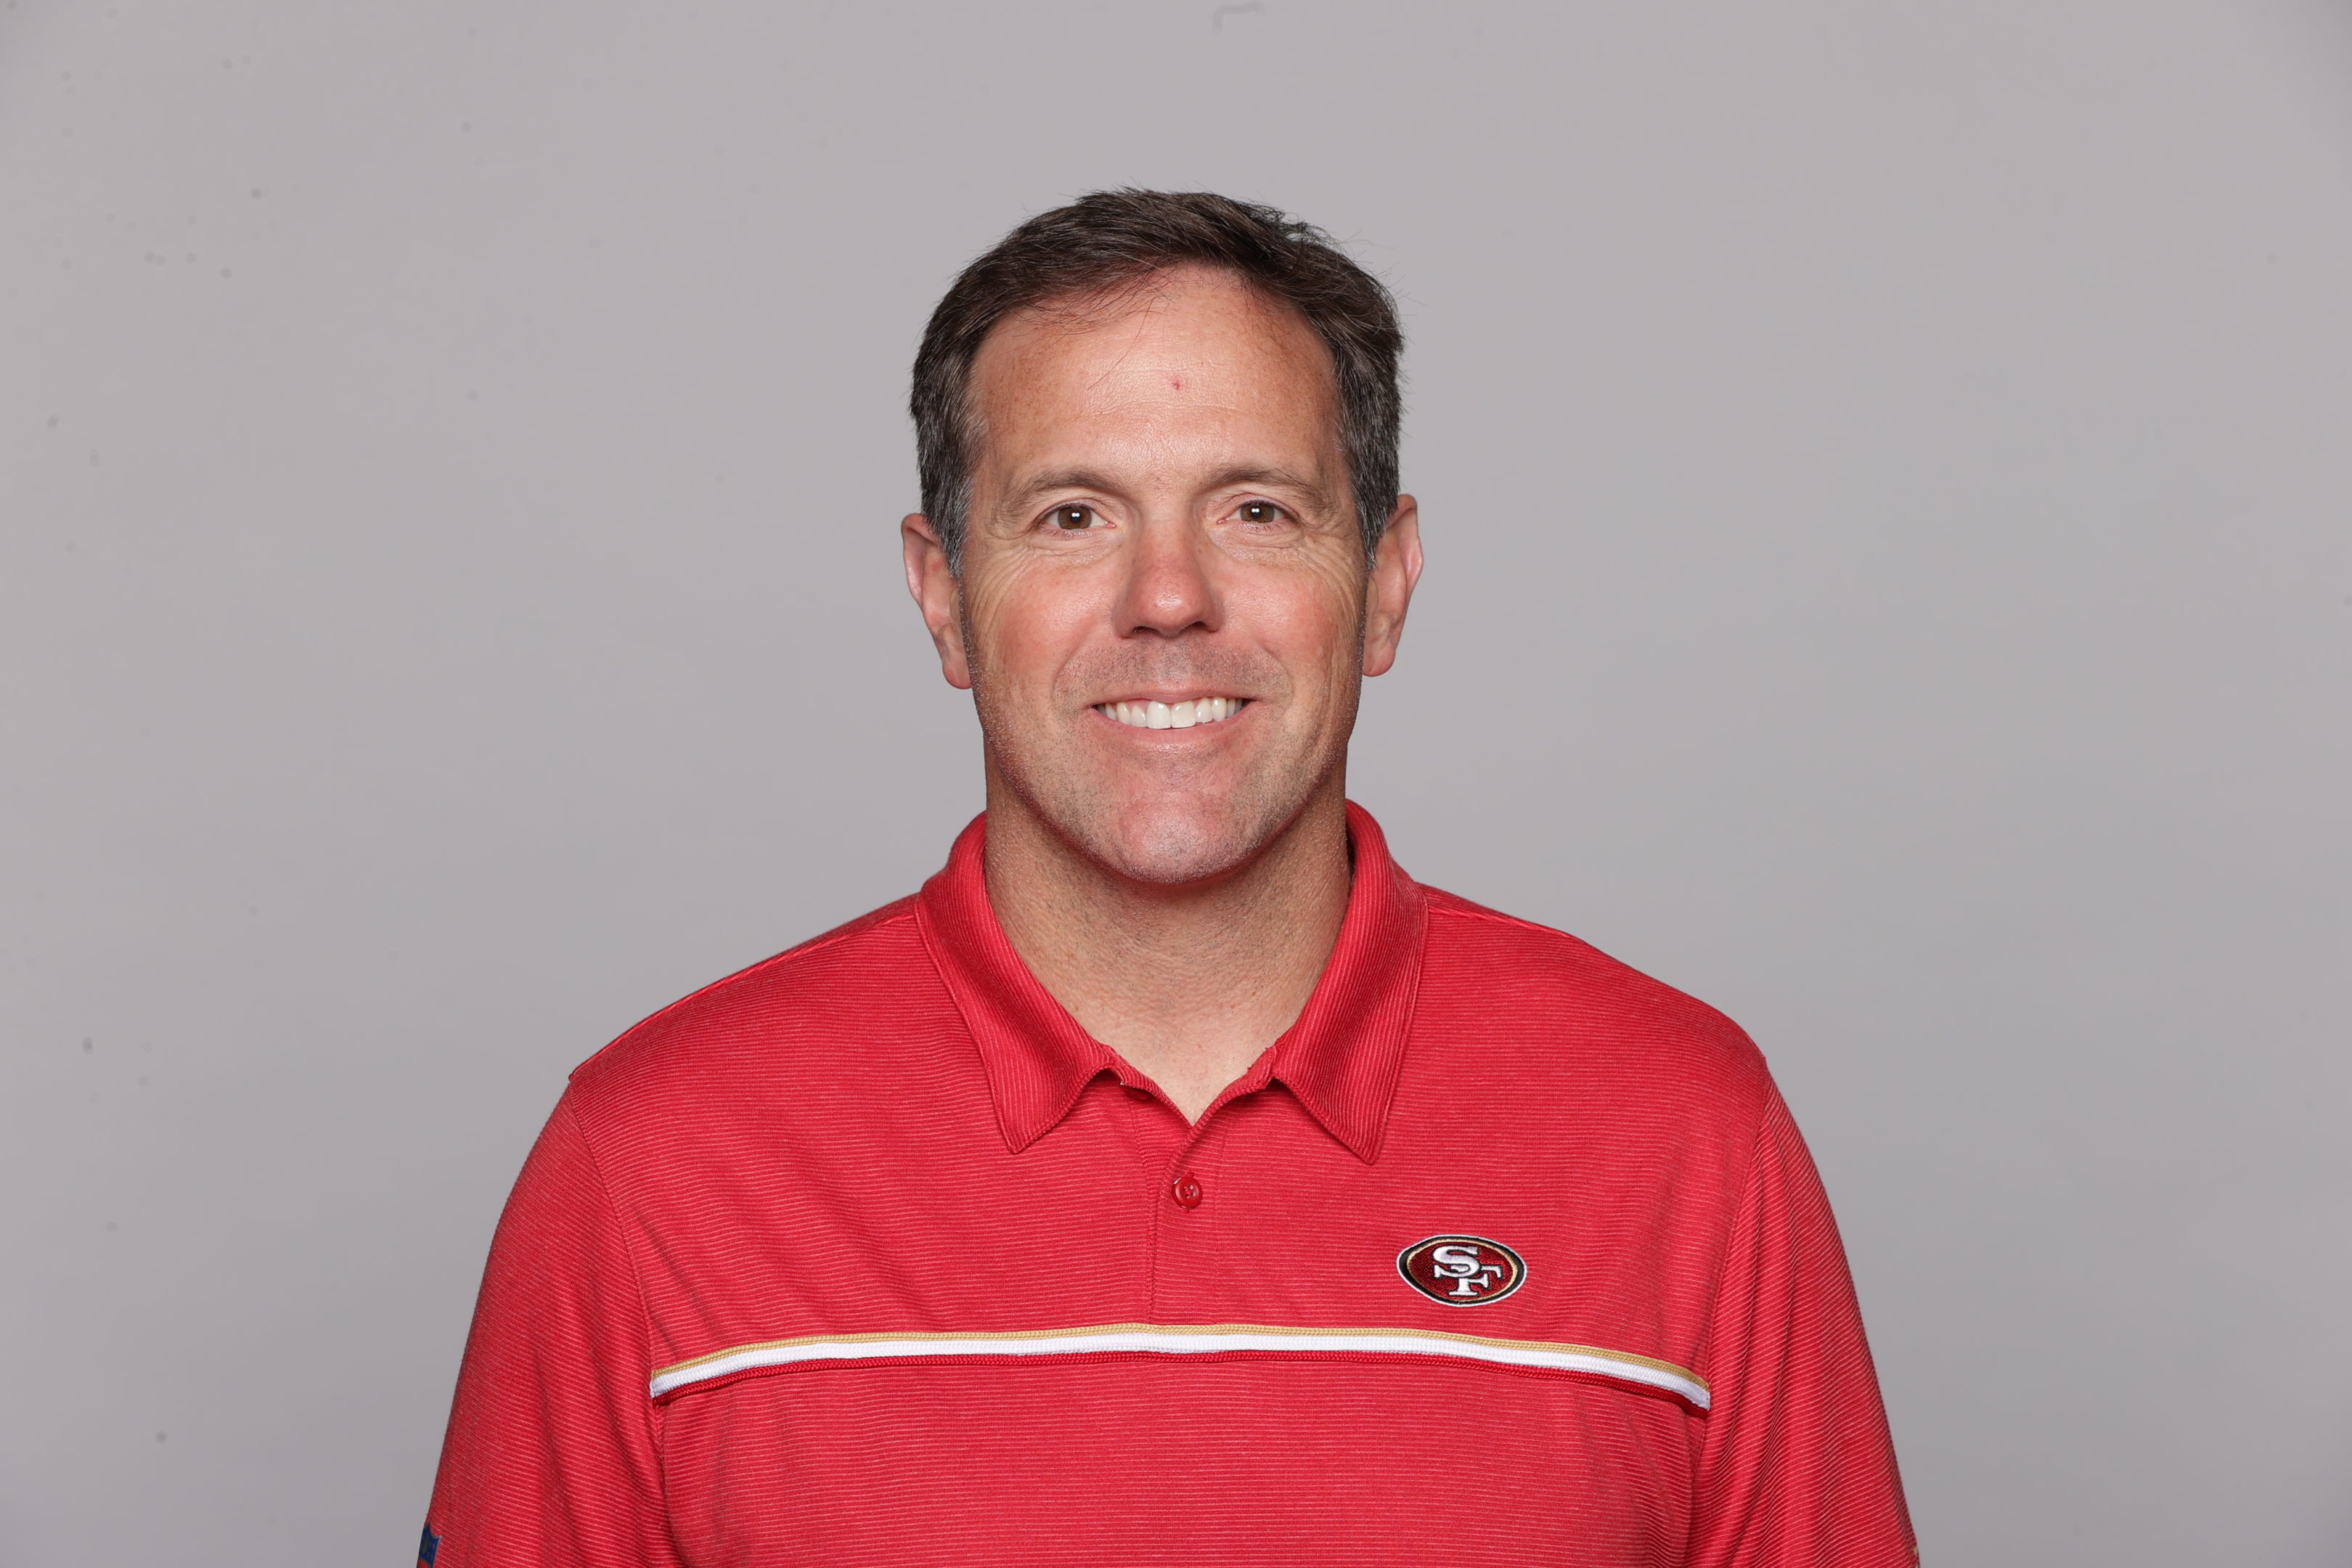 Brian Griese San Francisco 49ers quarterbacks coach